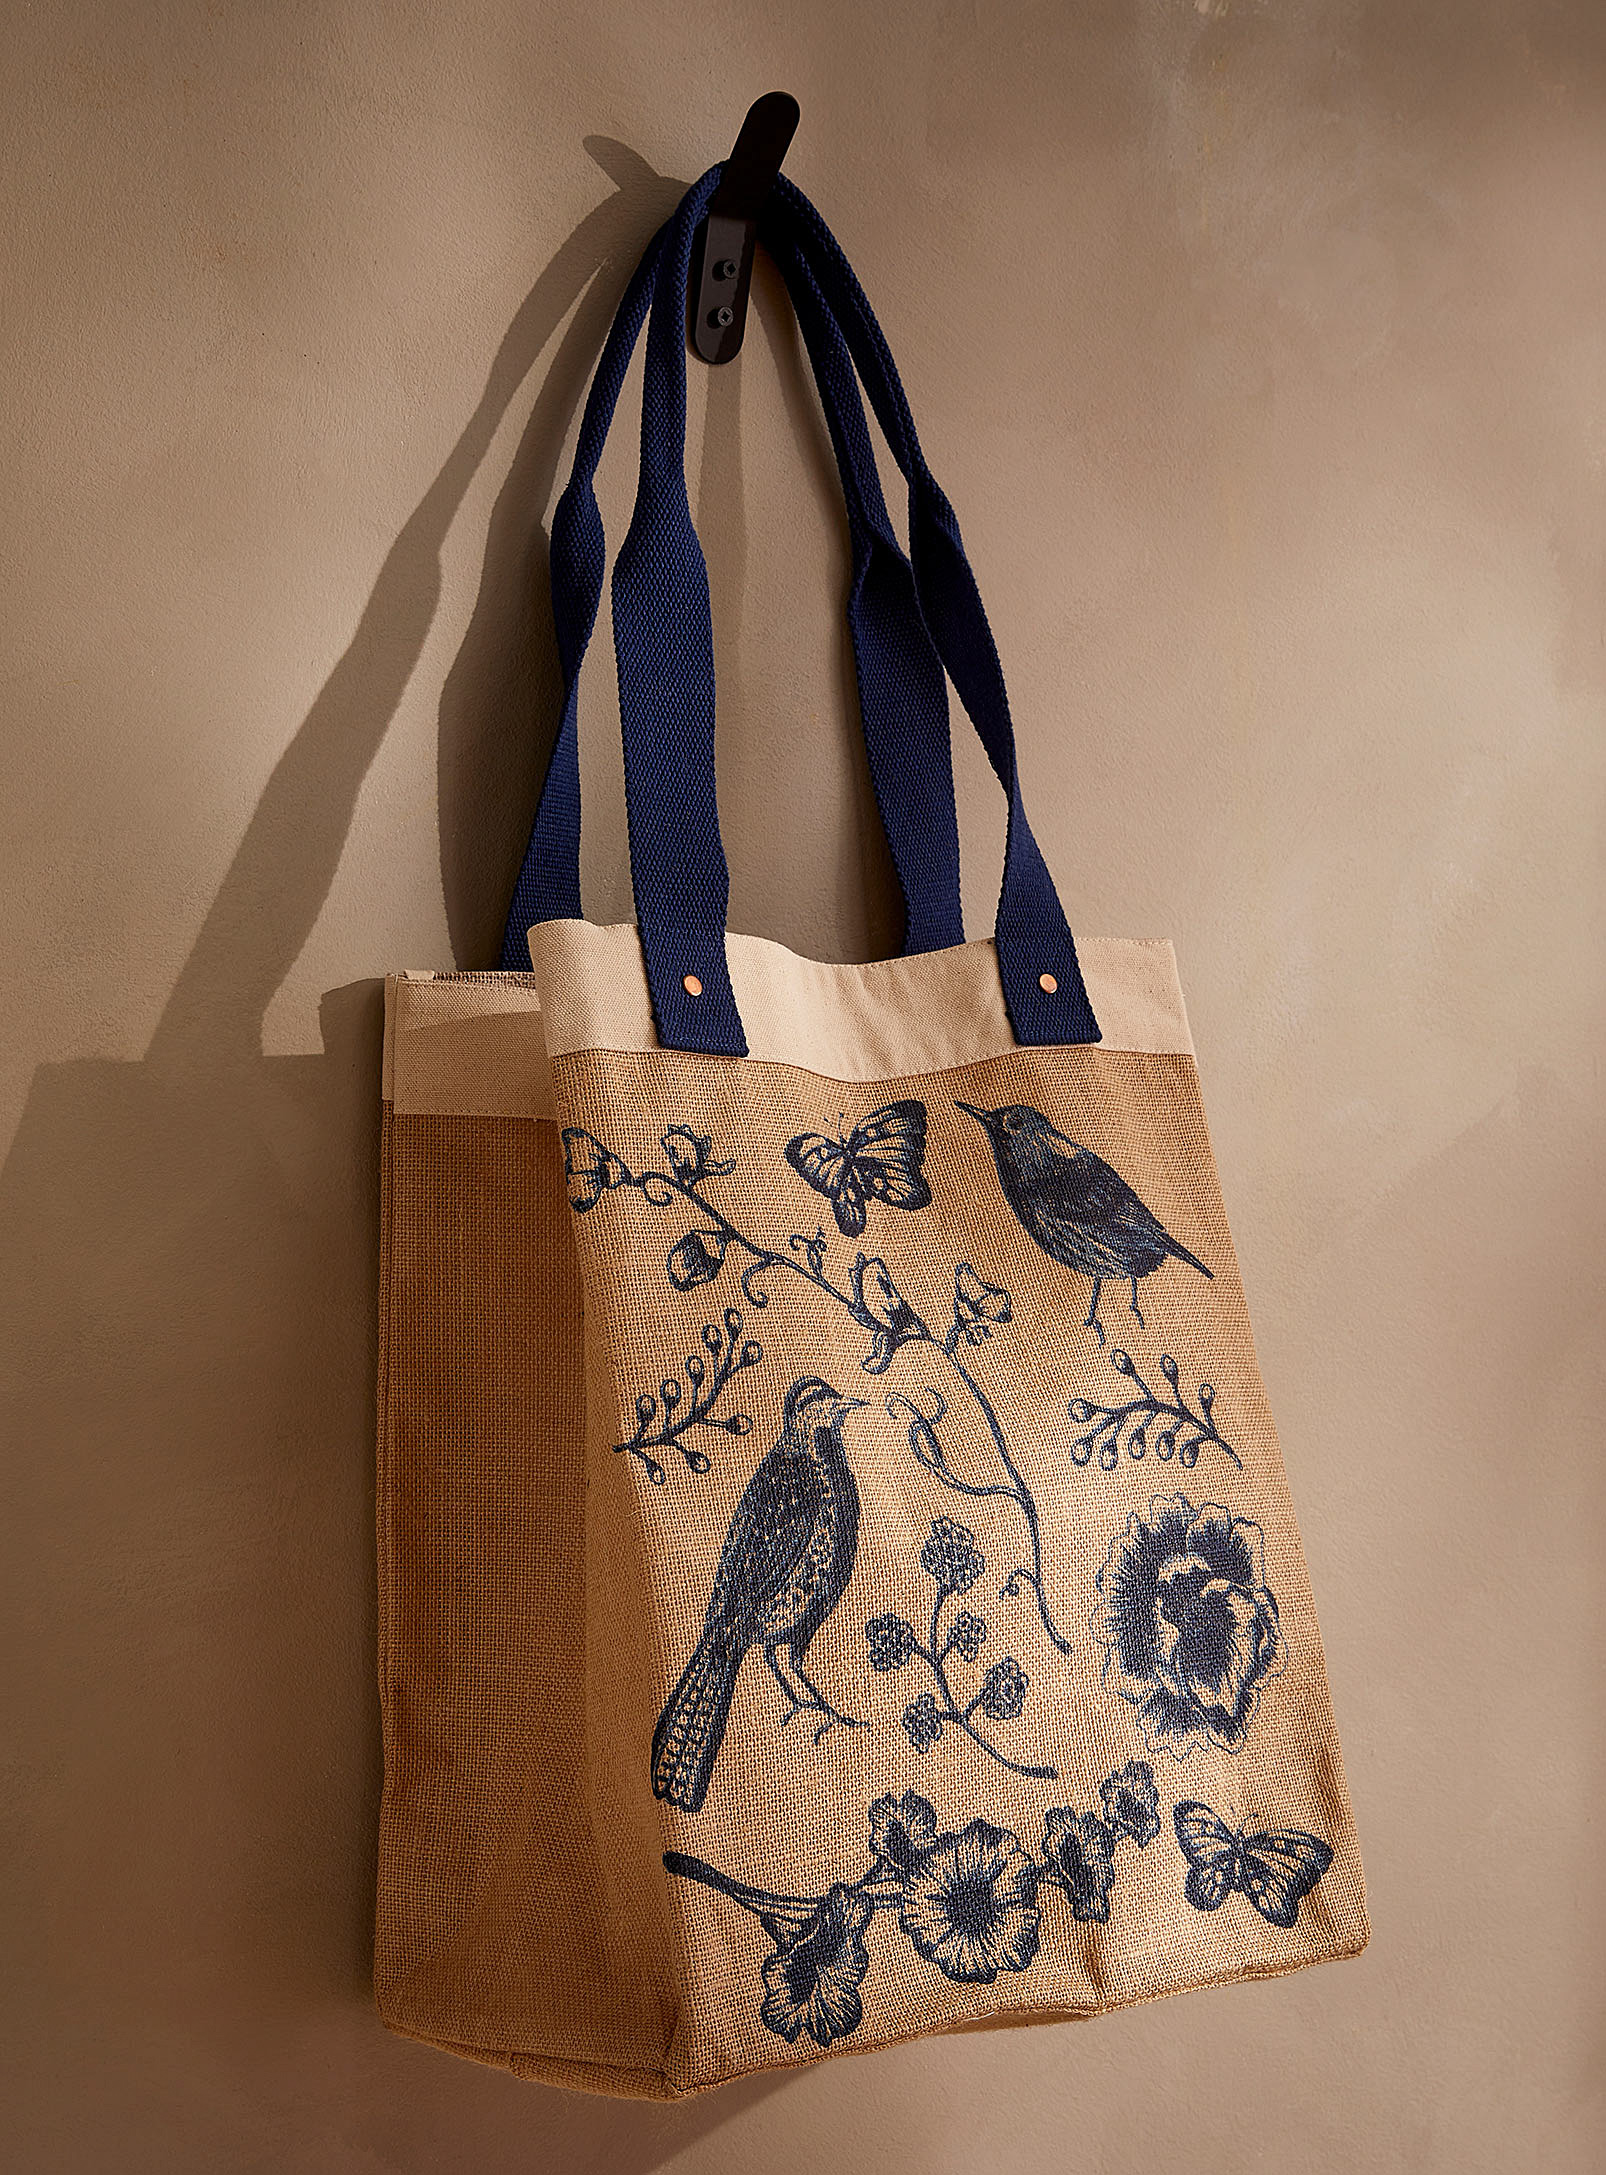 Danica - Le sac réutilisable en jute tapisserie mystique